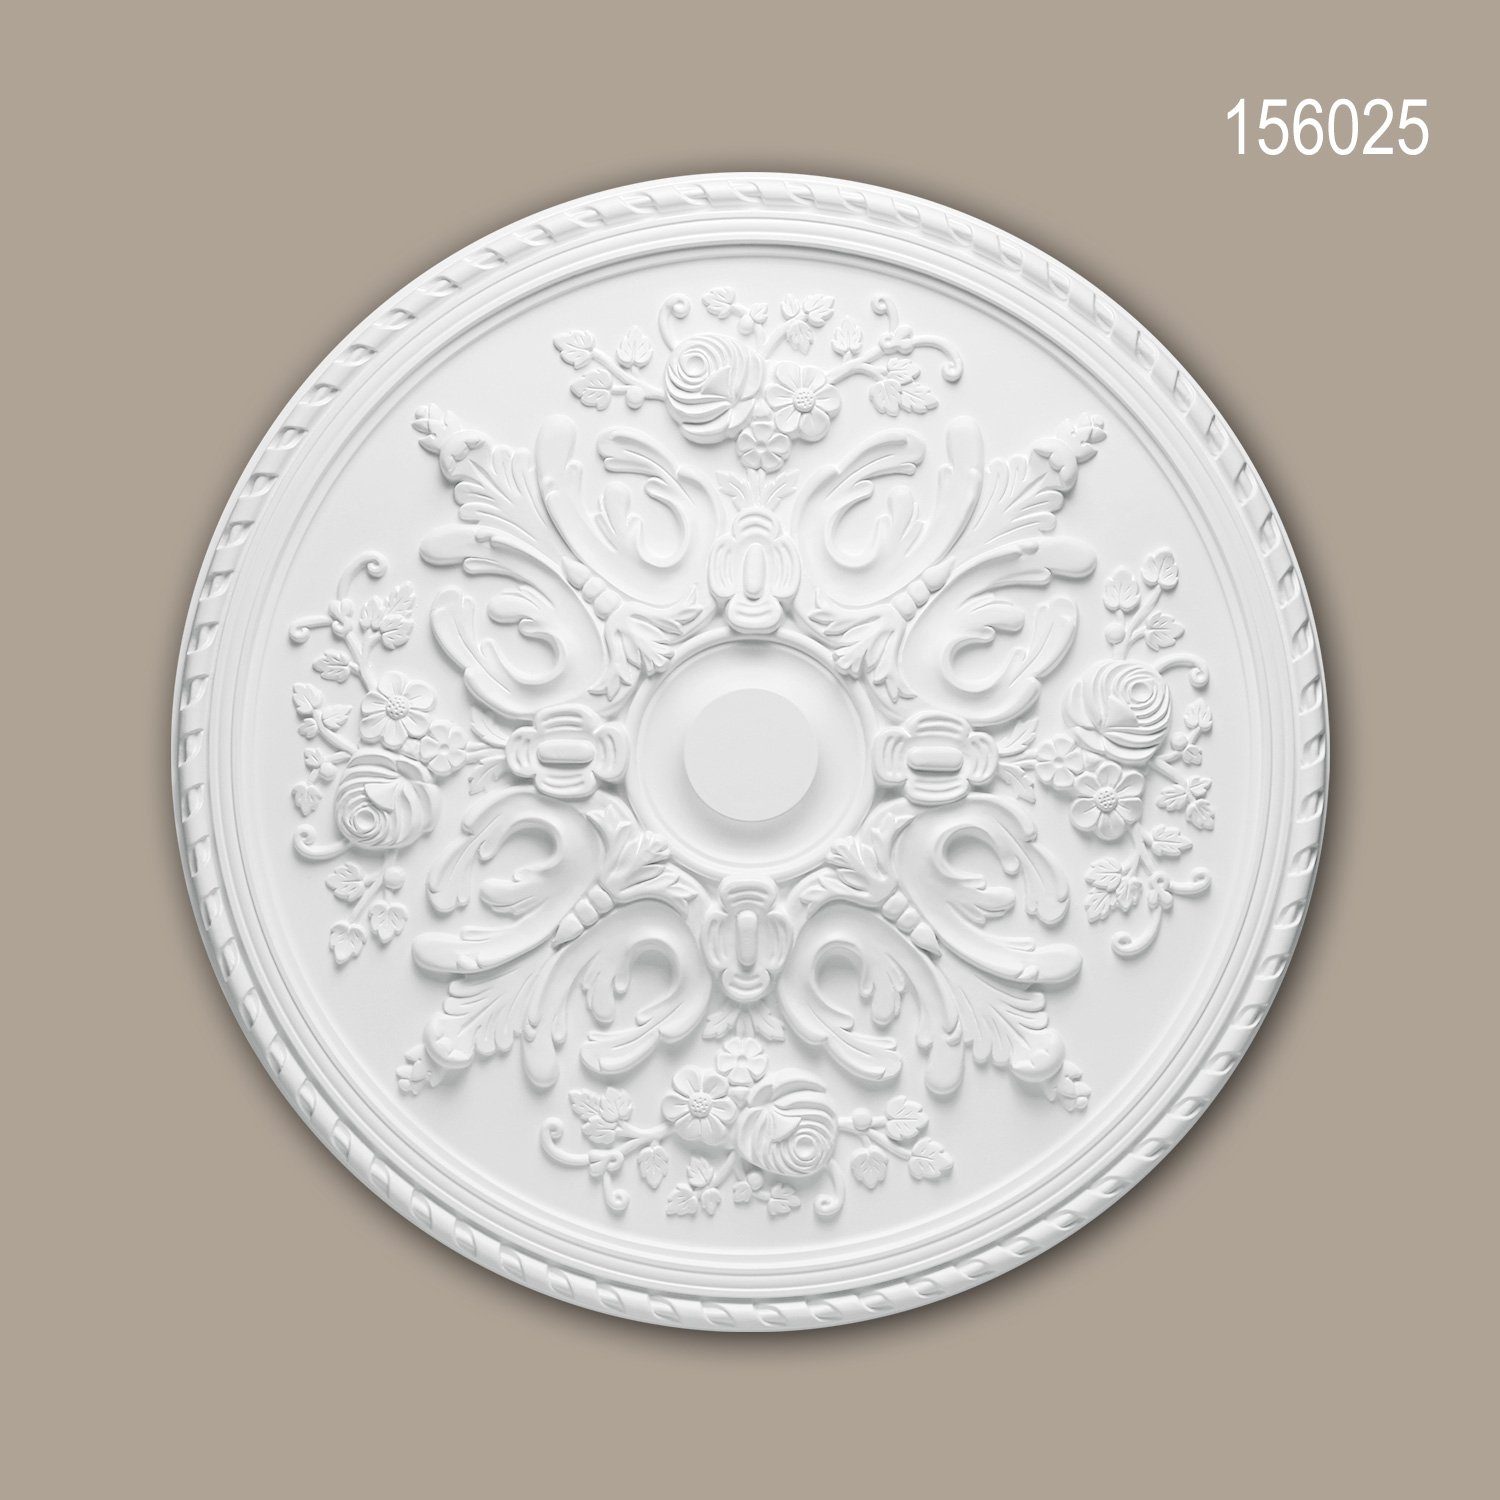 Profhome Decken-Rosette 156025 (Rosette, 1 St., Deckenrosette, Medallion, Stuckrosette, Deckenelement, Zierelement, Durchmesser 82 cm), weiß, vorgrundiert, Stil: Rokoko / Barock